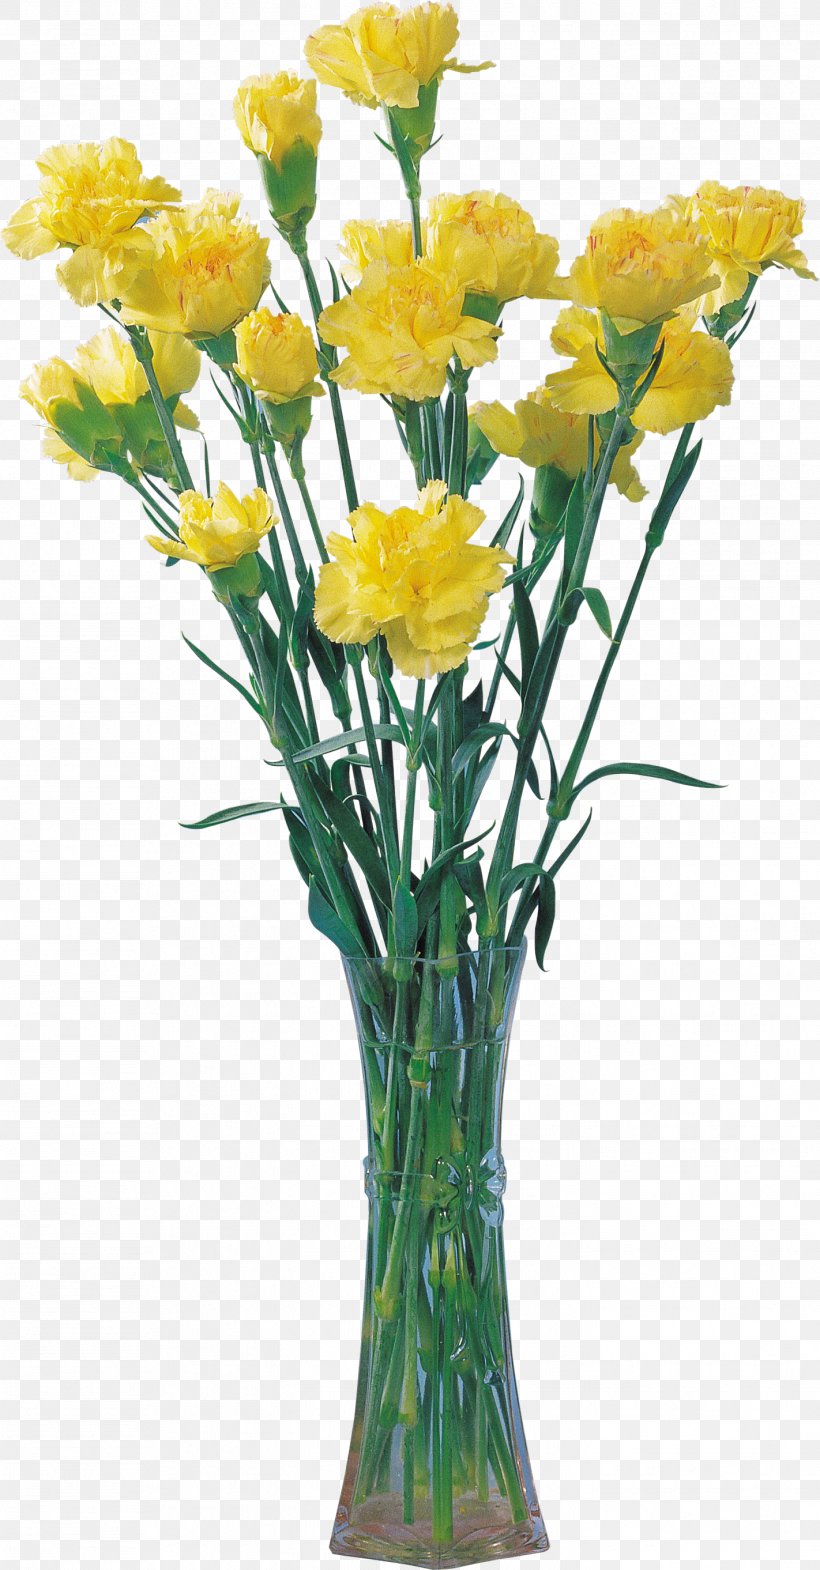 Flower Bouquet Vase Clip Art, PNG, 1422x2724px, Flower Bouquet, Artificial Flower, Cut Flowers, Floral Design, Floristry Download Free